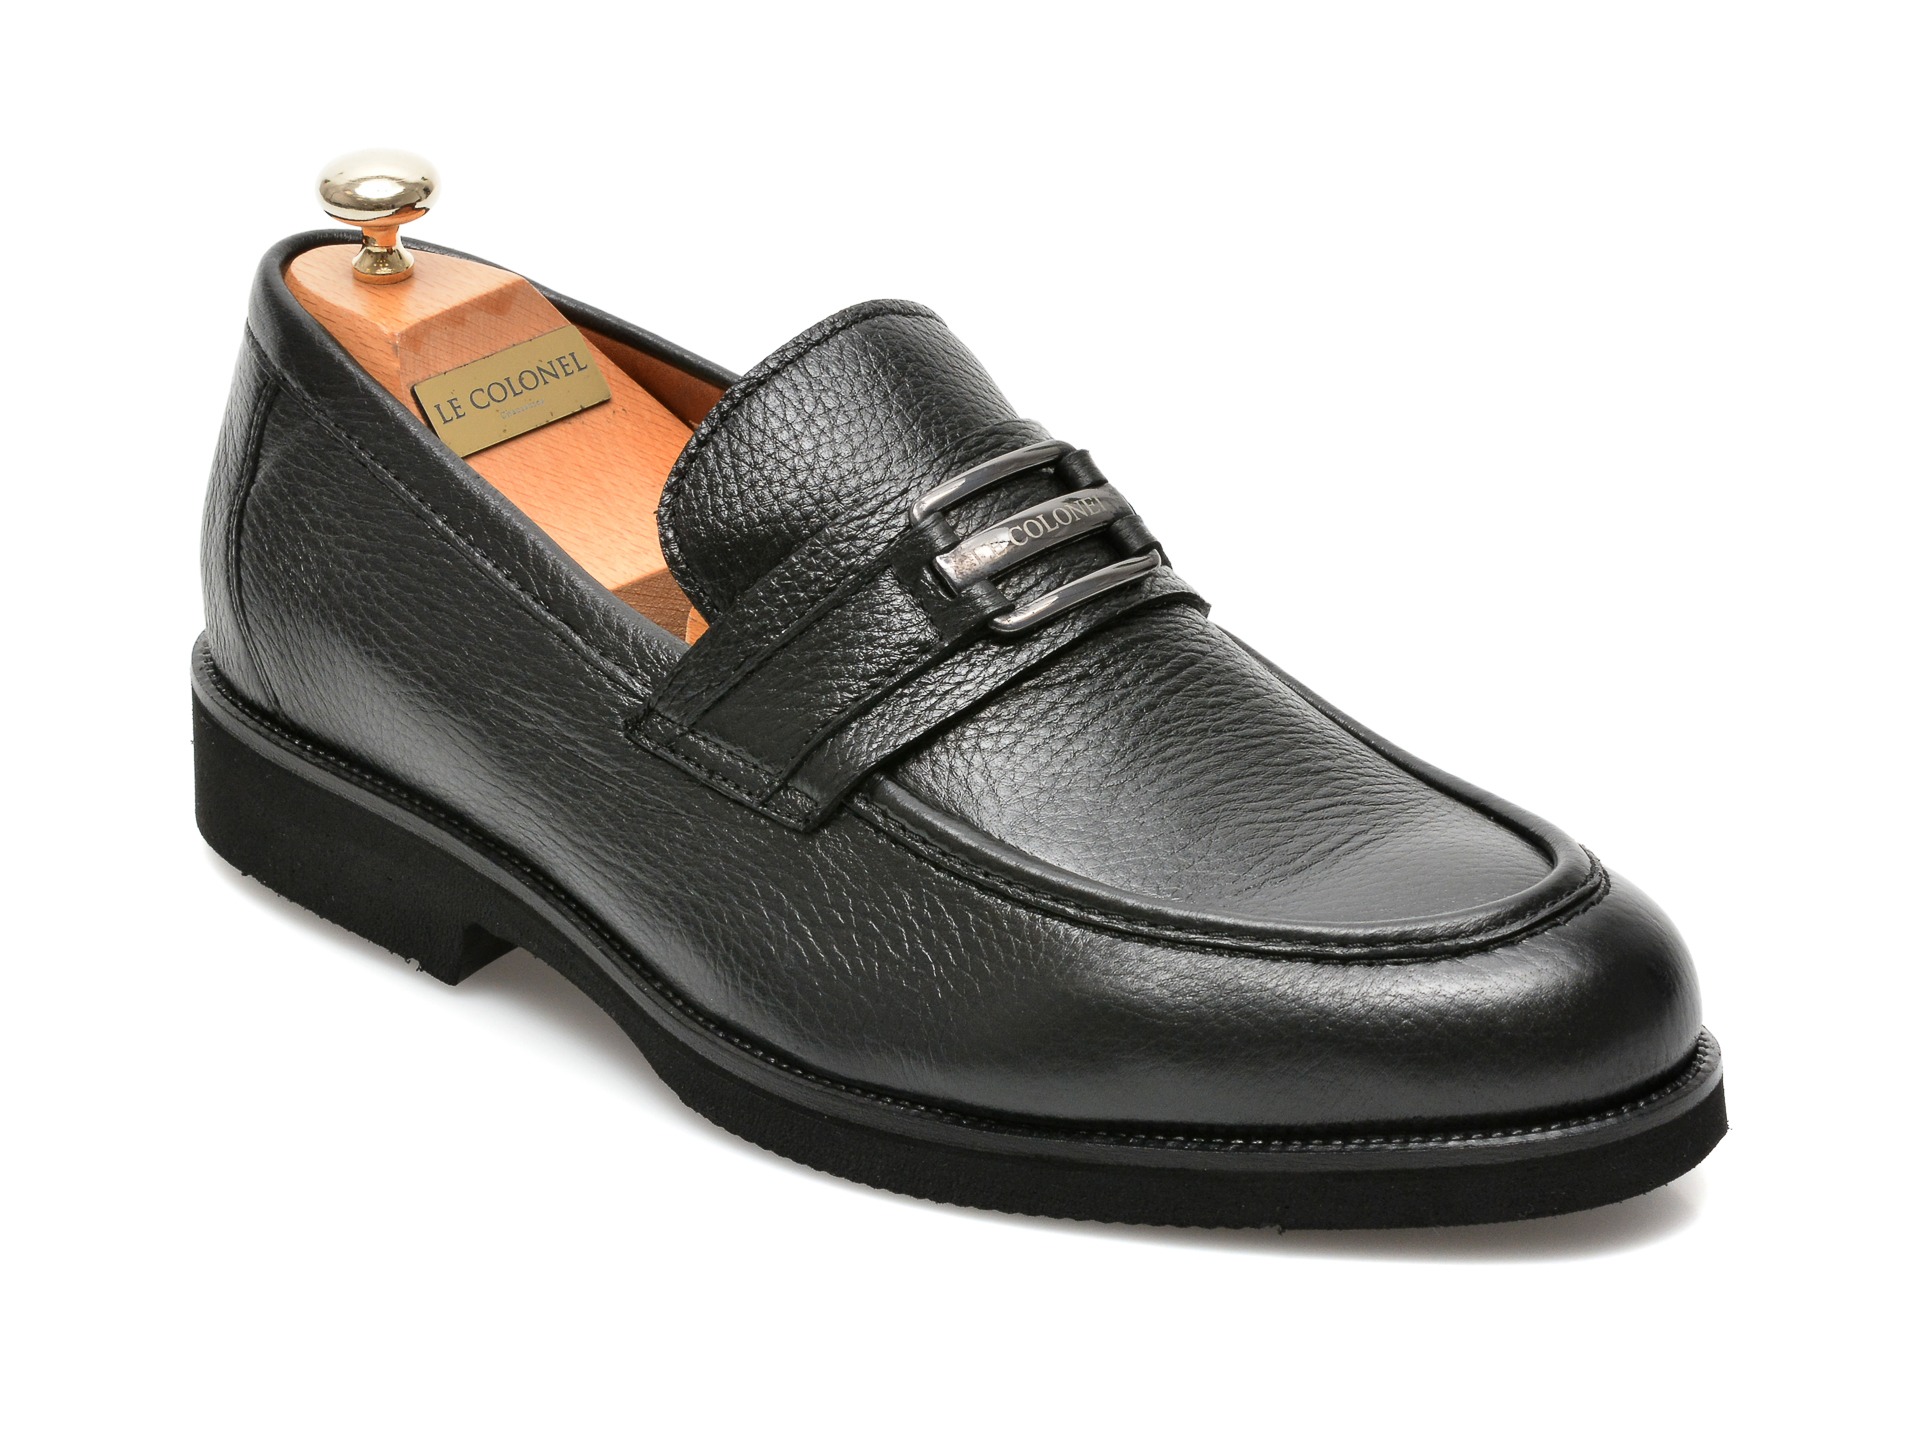 Pantofi LE COLONEL negri, 63914, din piele naturala Le Colonel Le Colonel